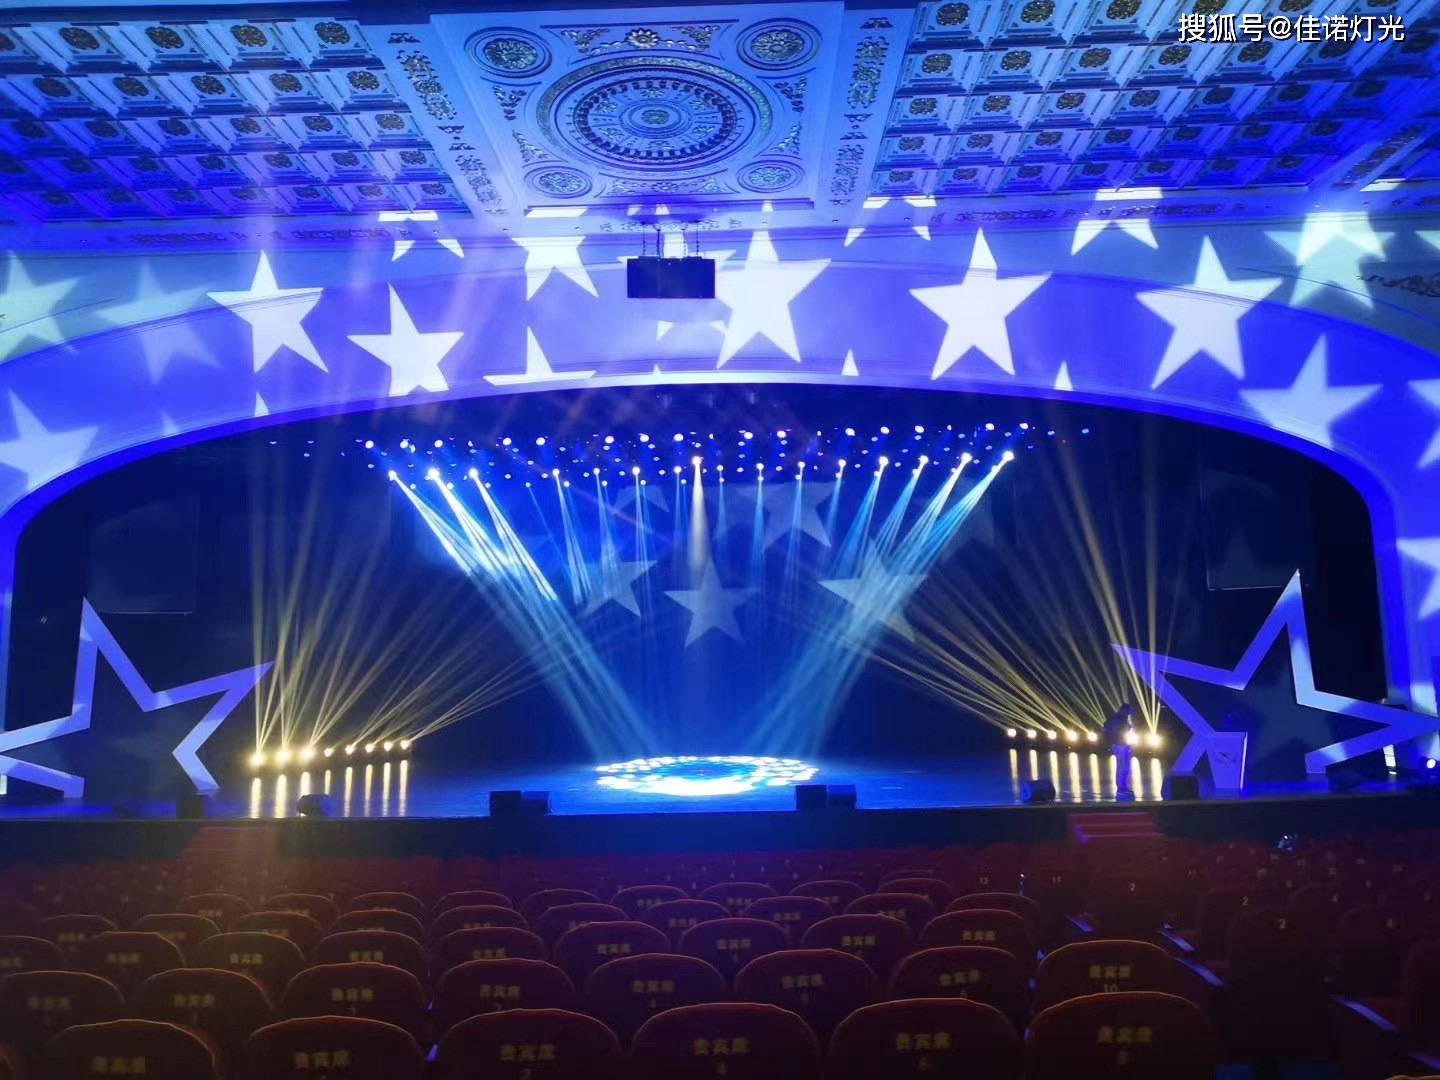 引进了佳诺灯光全套的舞台灯光灯光设备,采用高科技渲染舞台气氛效果